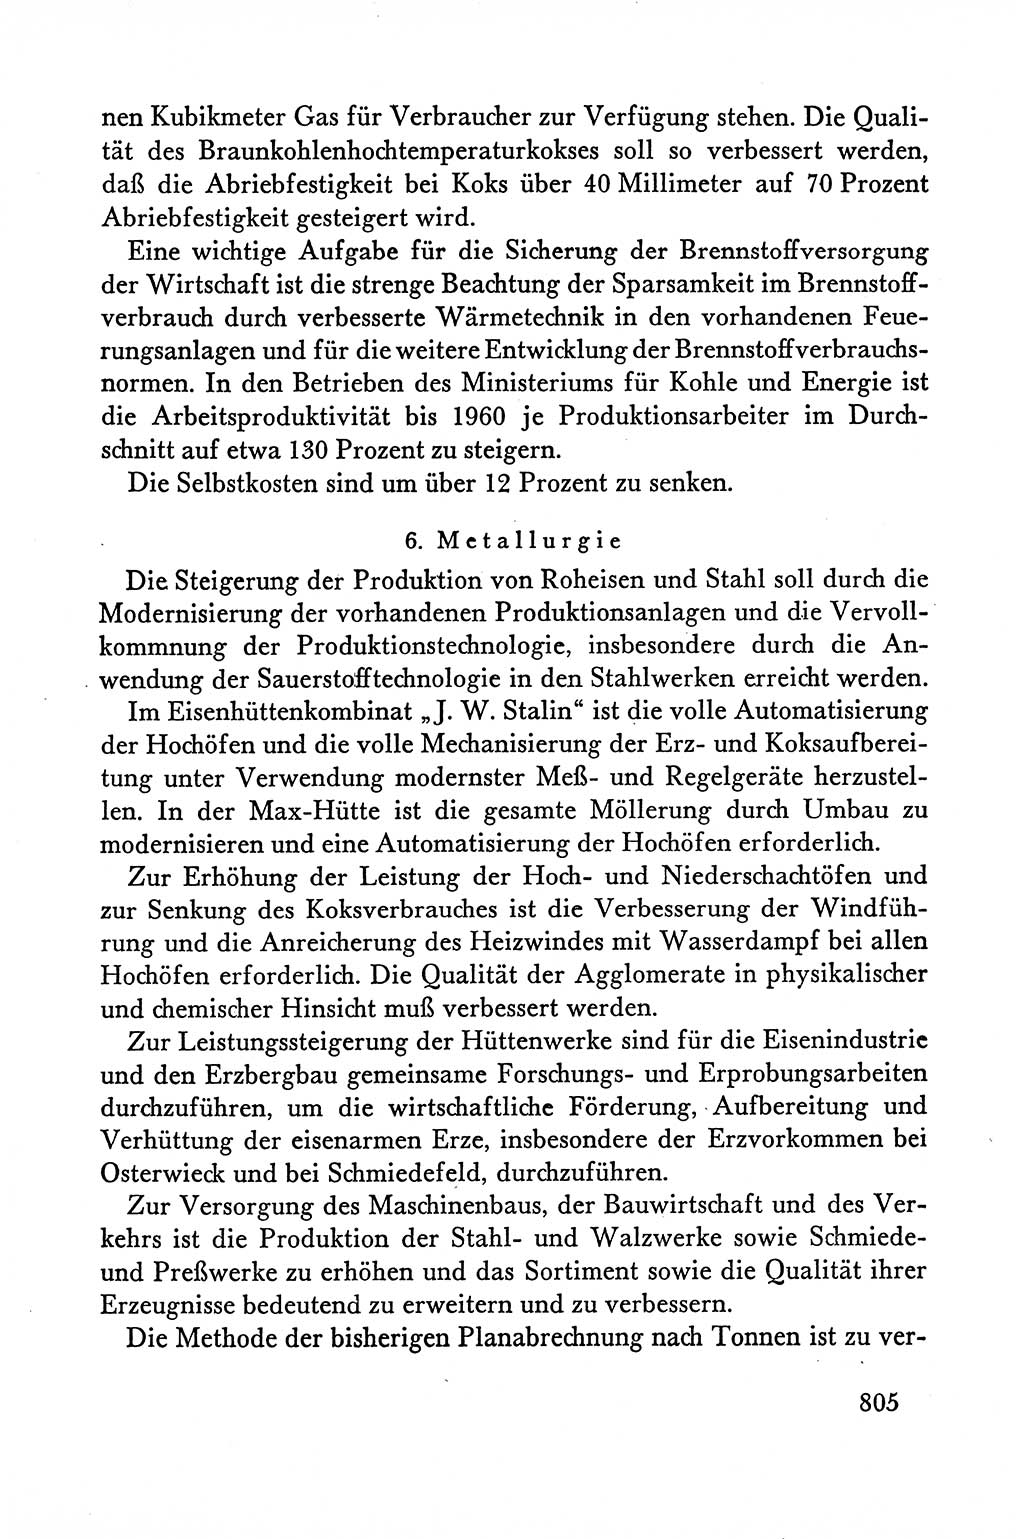 Dokumente der Sozialistischen Einheitspartei Deutschlands (SED) [Deutsche Demokratische Republik (DDR)] 1958-1959, Seite 805 (Dok. SED DDR 1958-1959, S. 805)